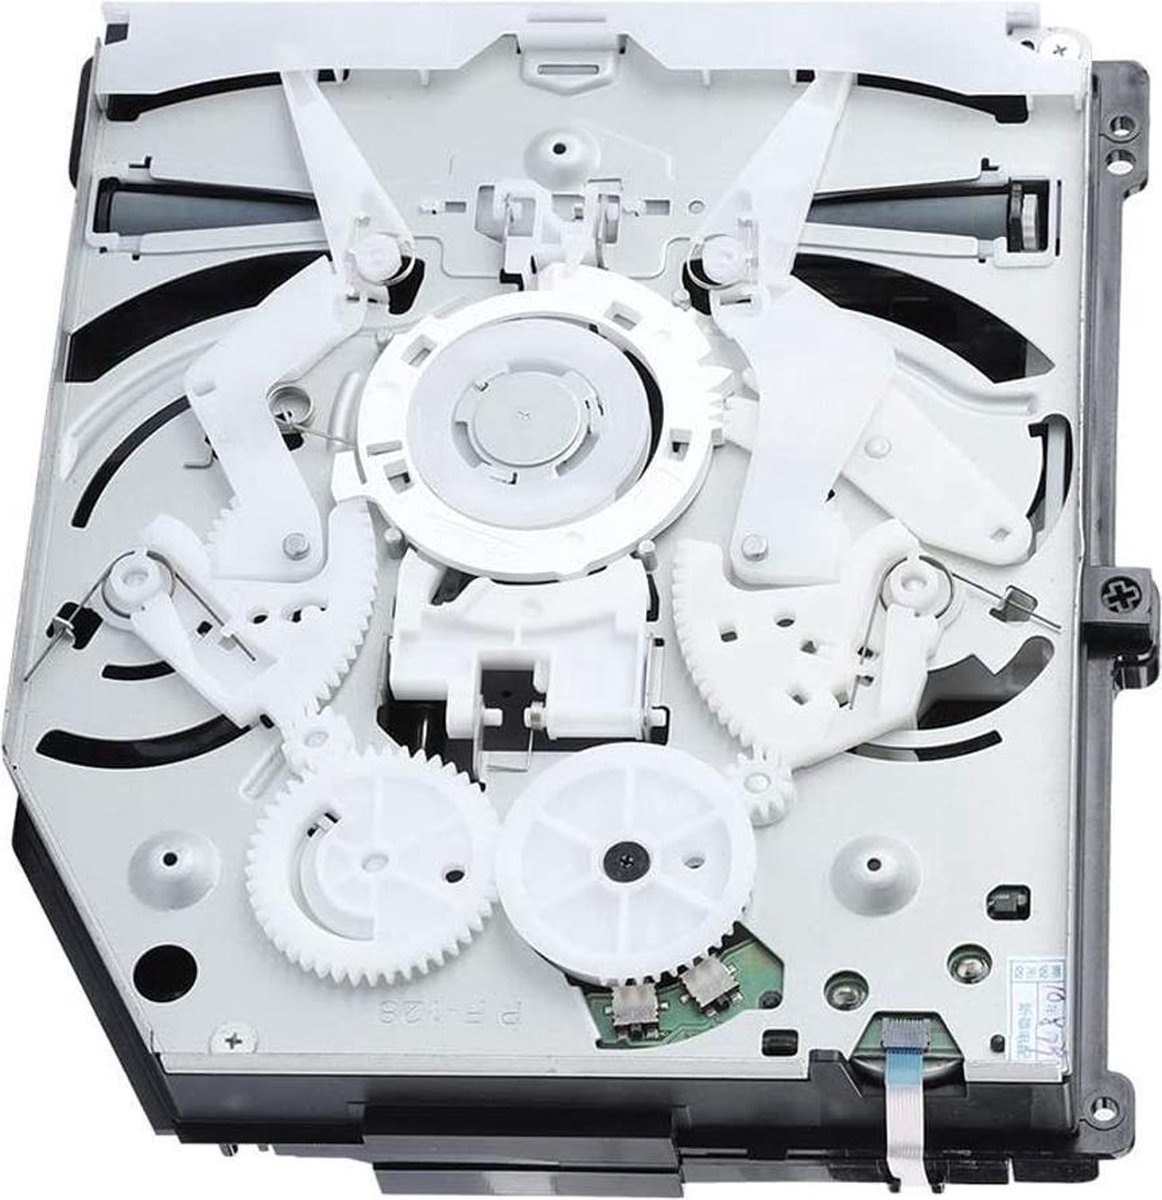 コピースターズDVD複製機CD-DVD-バーナードライブ複製機コピースタワー1-5 24倍サータ